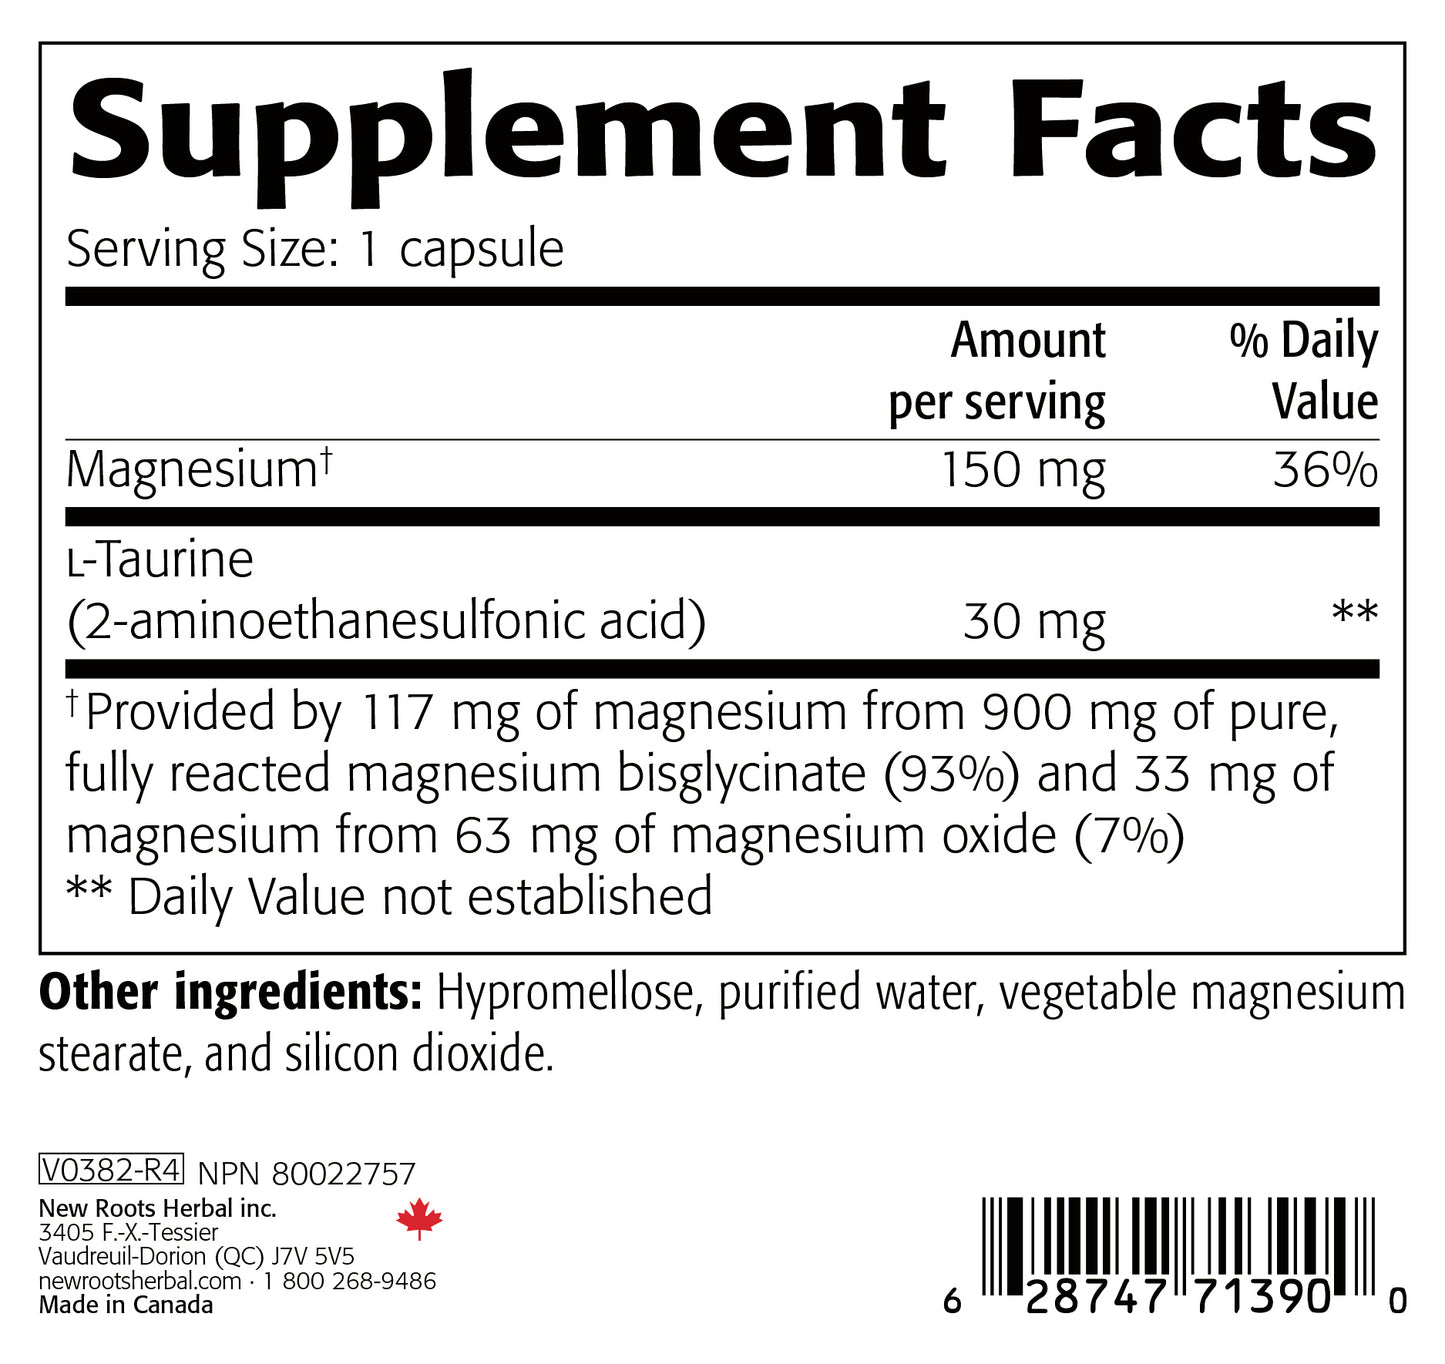 Magnesium Bisglycinate Plus (120 Veg Caps)